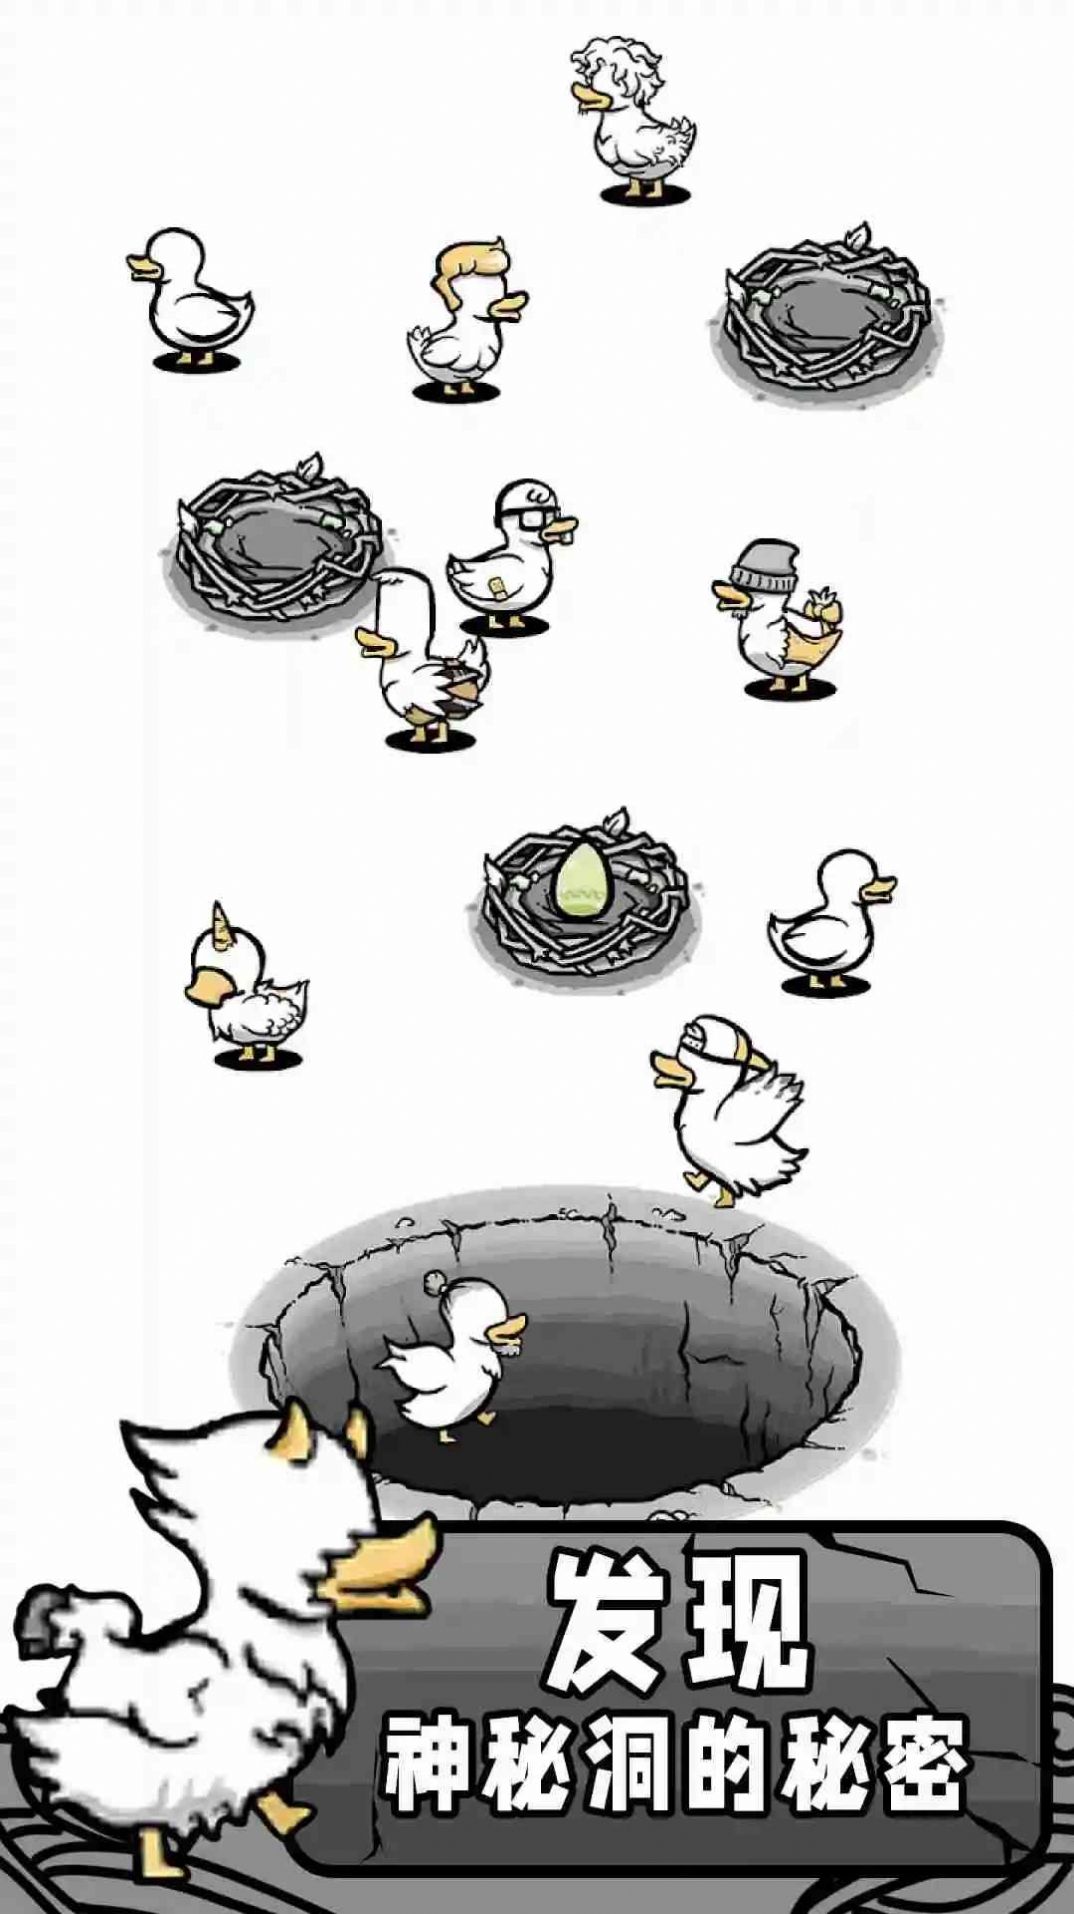 奇怪鸭子世界游戏官方版